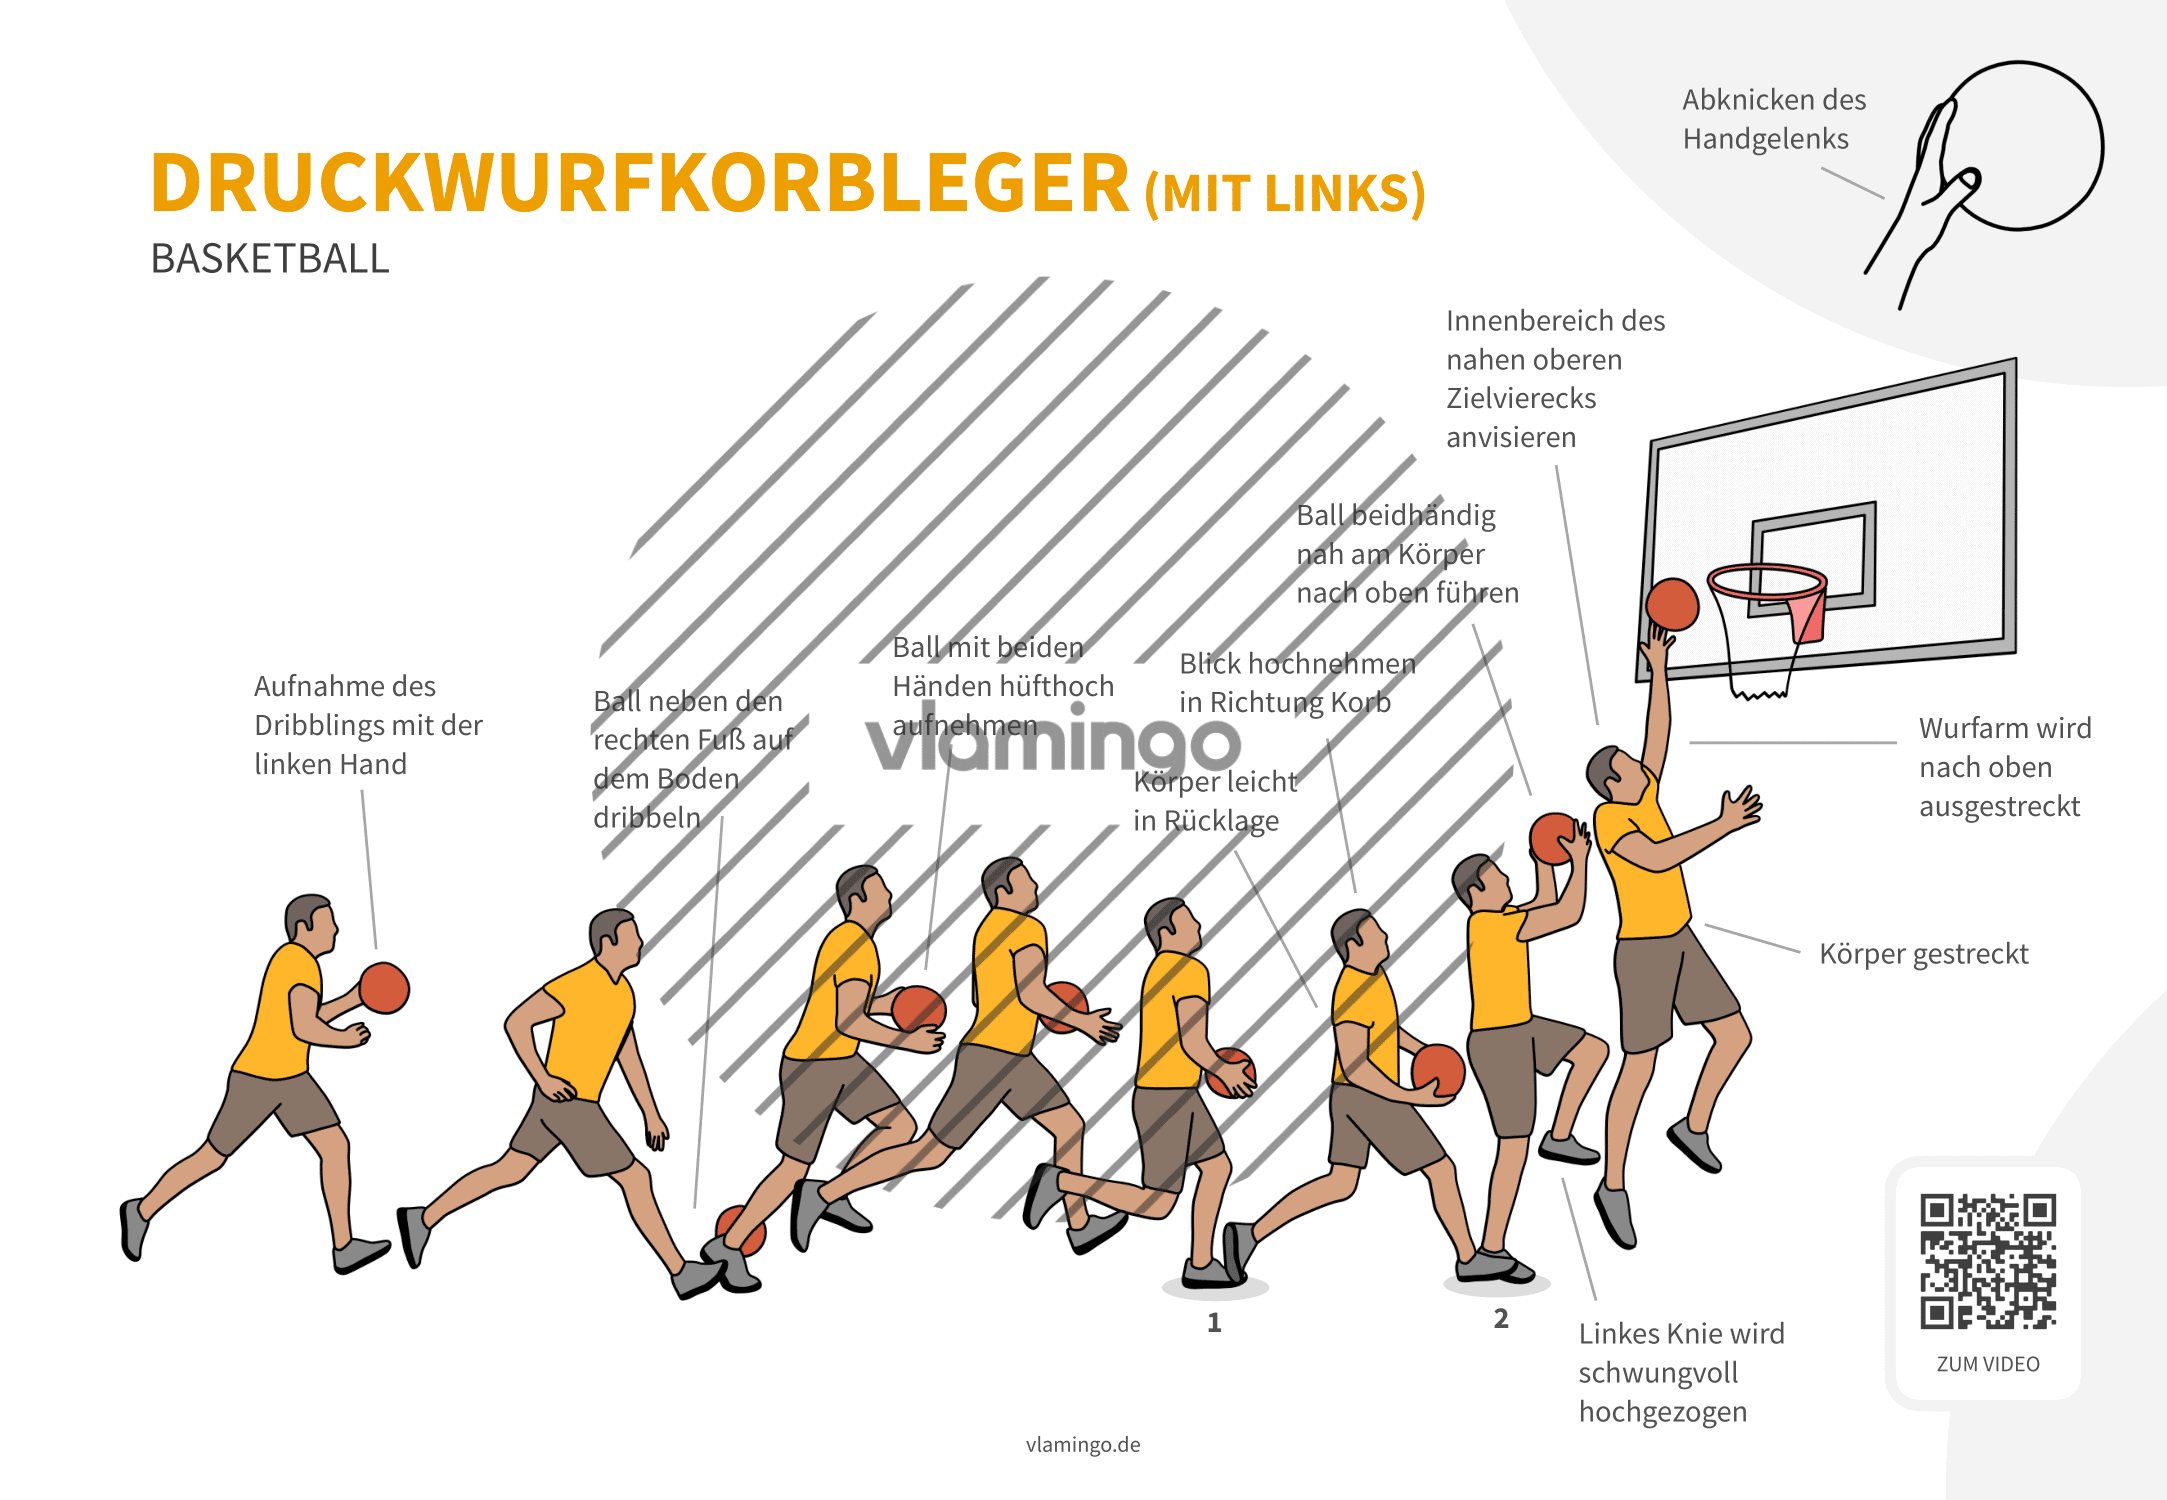 Druckwurfkorbleger - Basketball